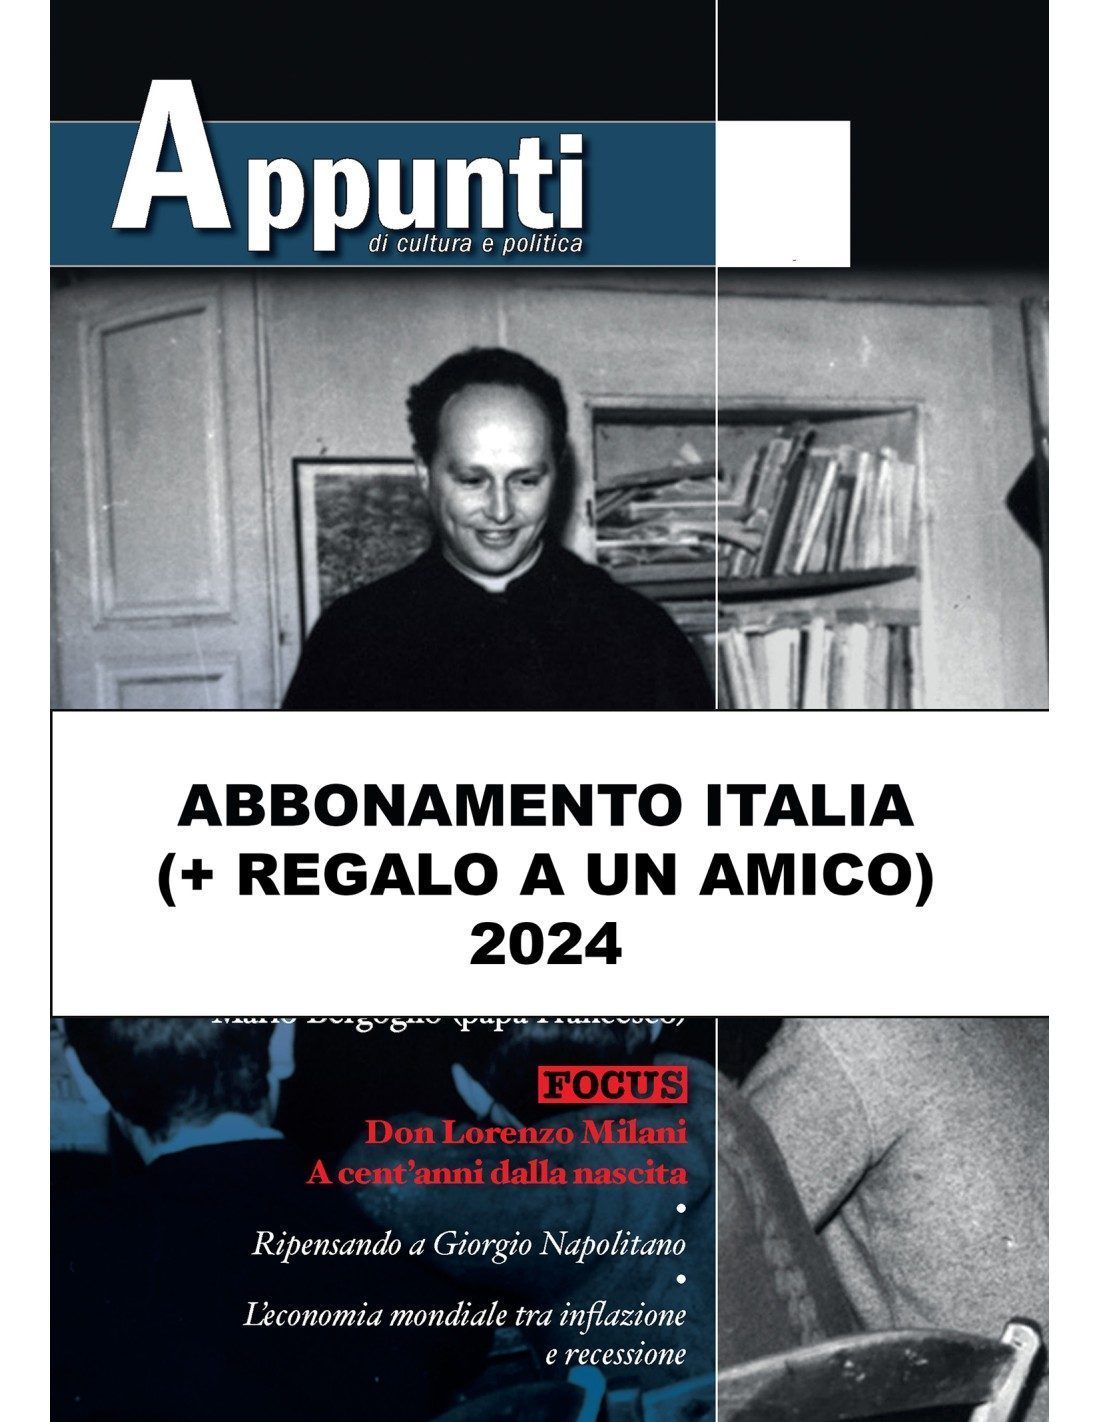 APPUNTI Abbonamento Italia + REGALO ad un amico 2024 - Editrice